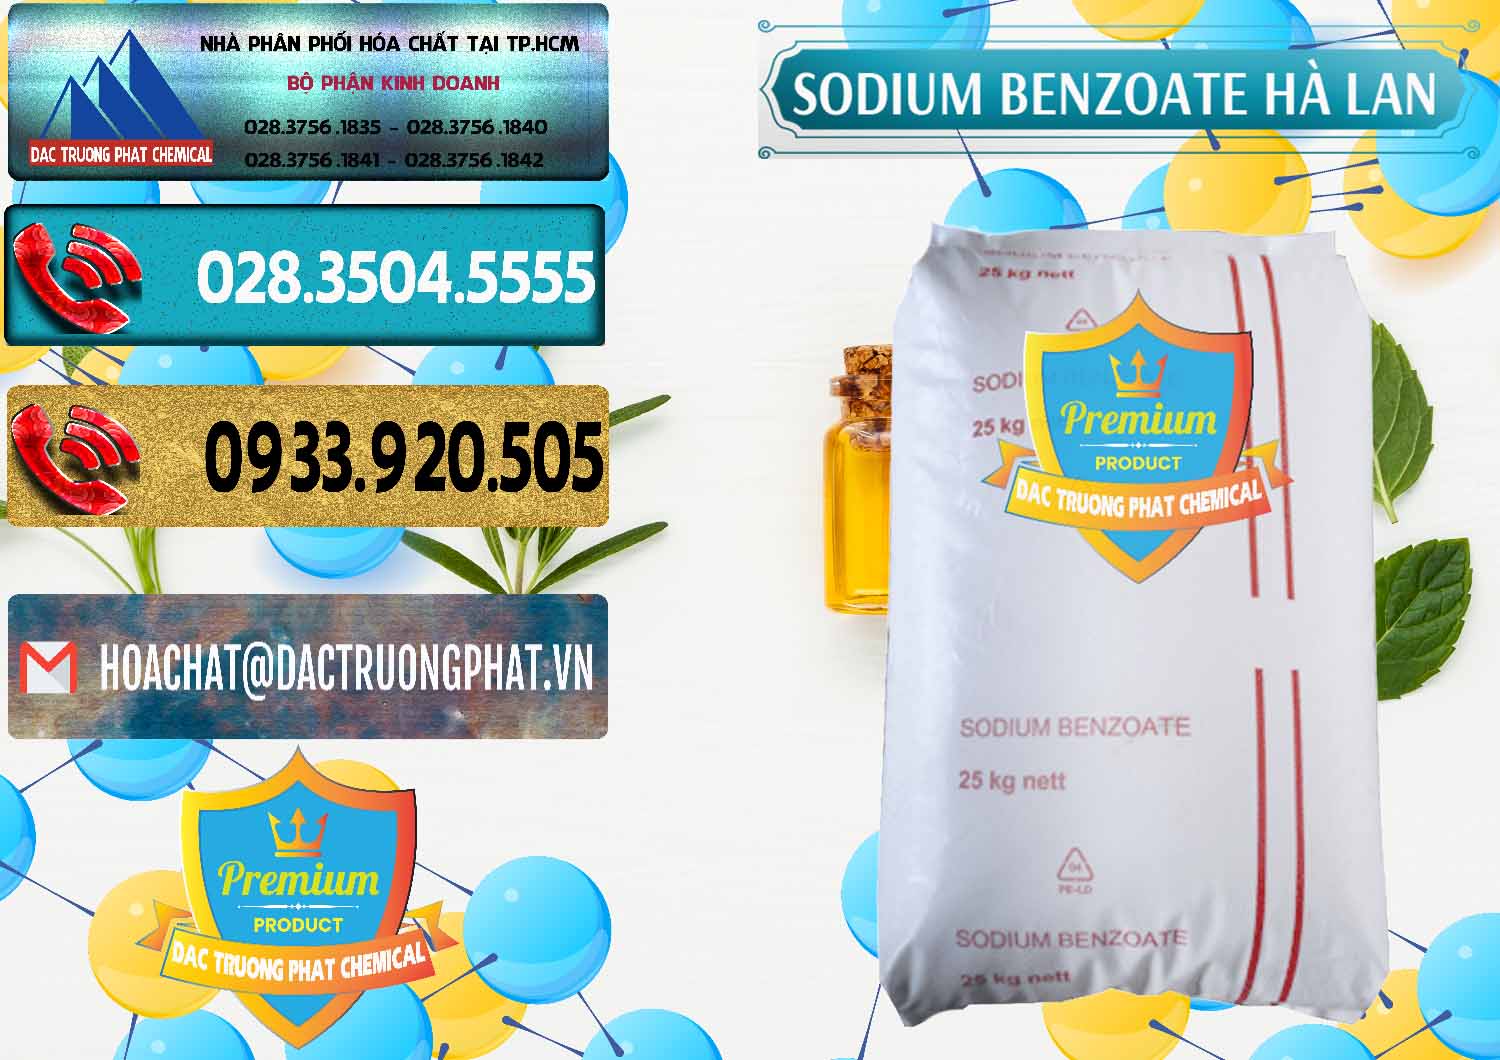 Công ty chuyên cung ứng _ bán Sodium Benzoate - Mốc Bột Chữ Cam Hà Lan Netherlands - 0360 - Nơi chuyên bán - phân phối hóa chất tại TP.HCM - hoachatdetnhuom.com